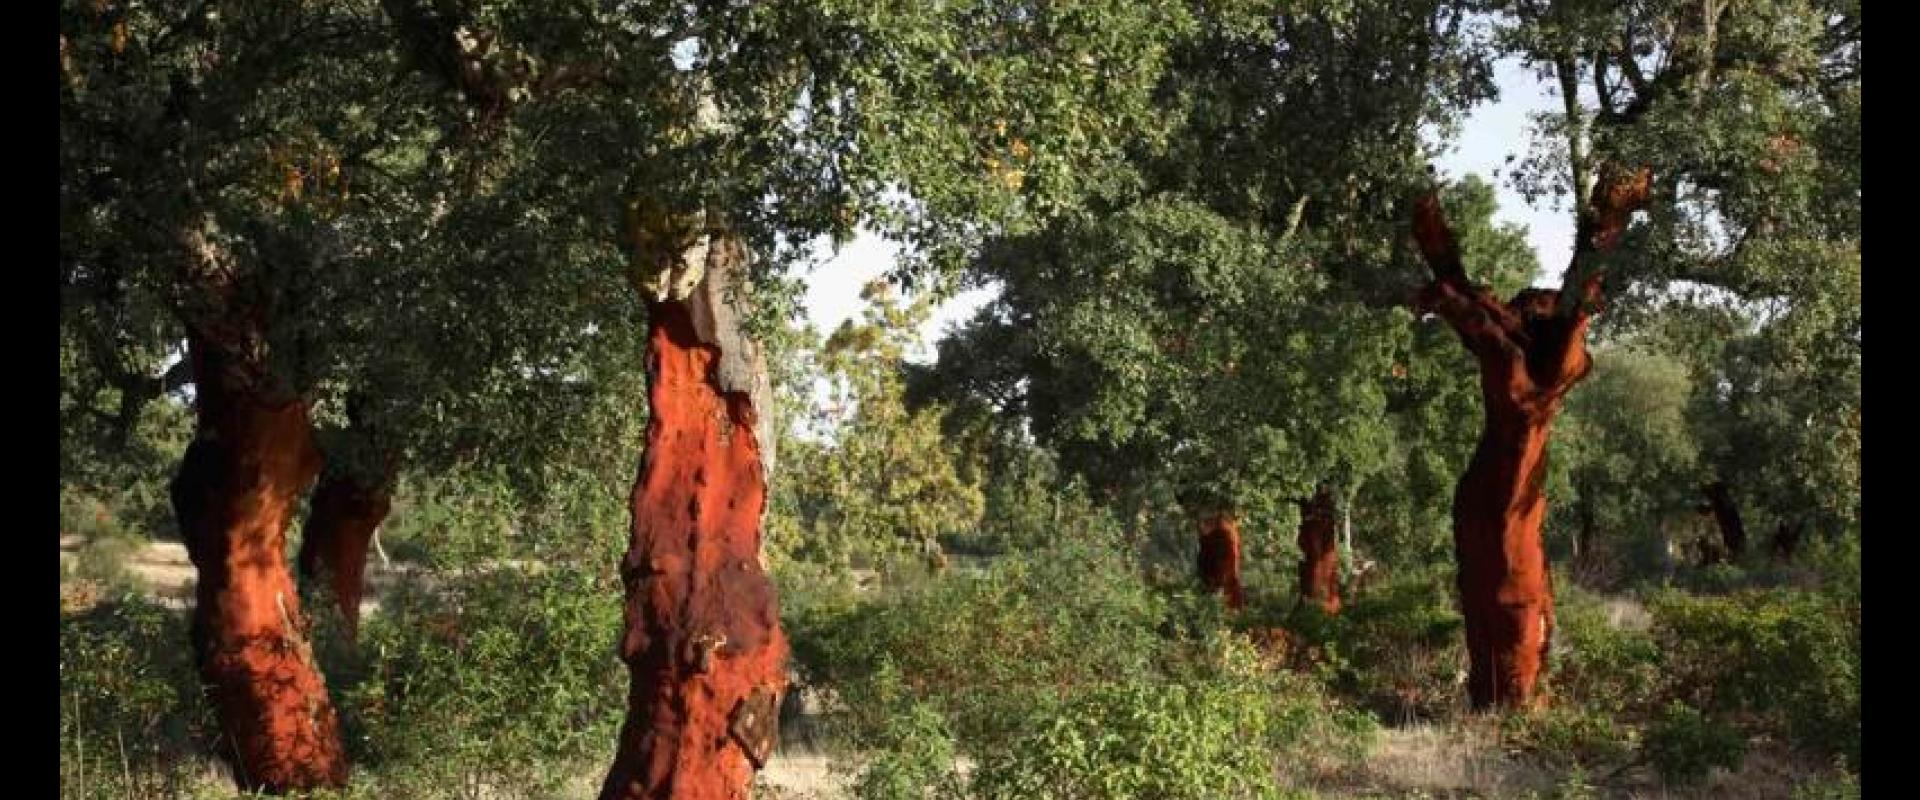 Valdelosa Cork oak Trees